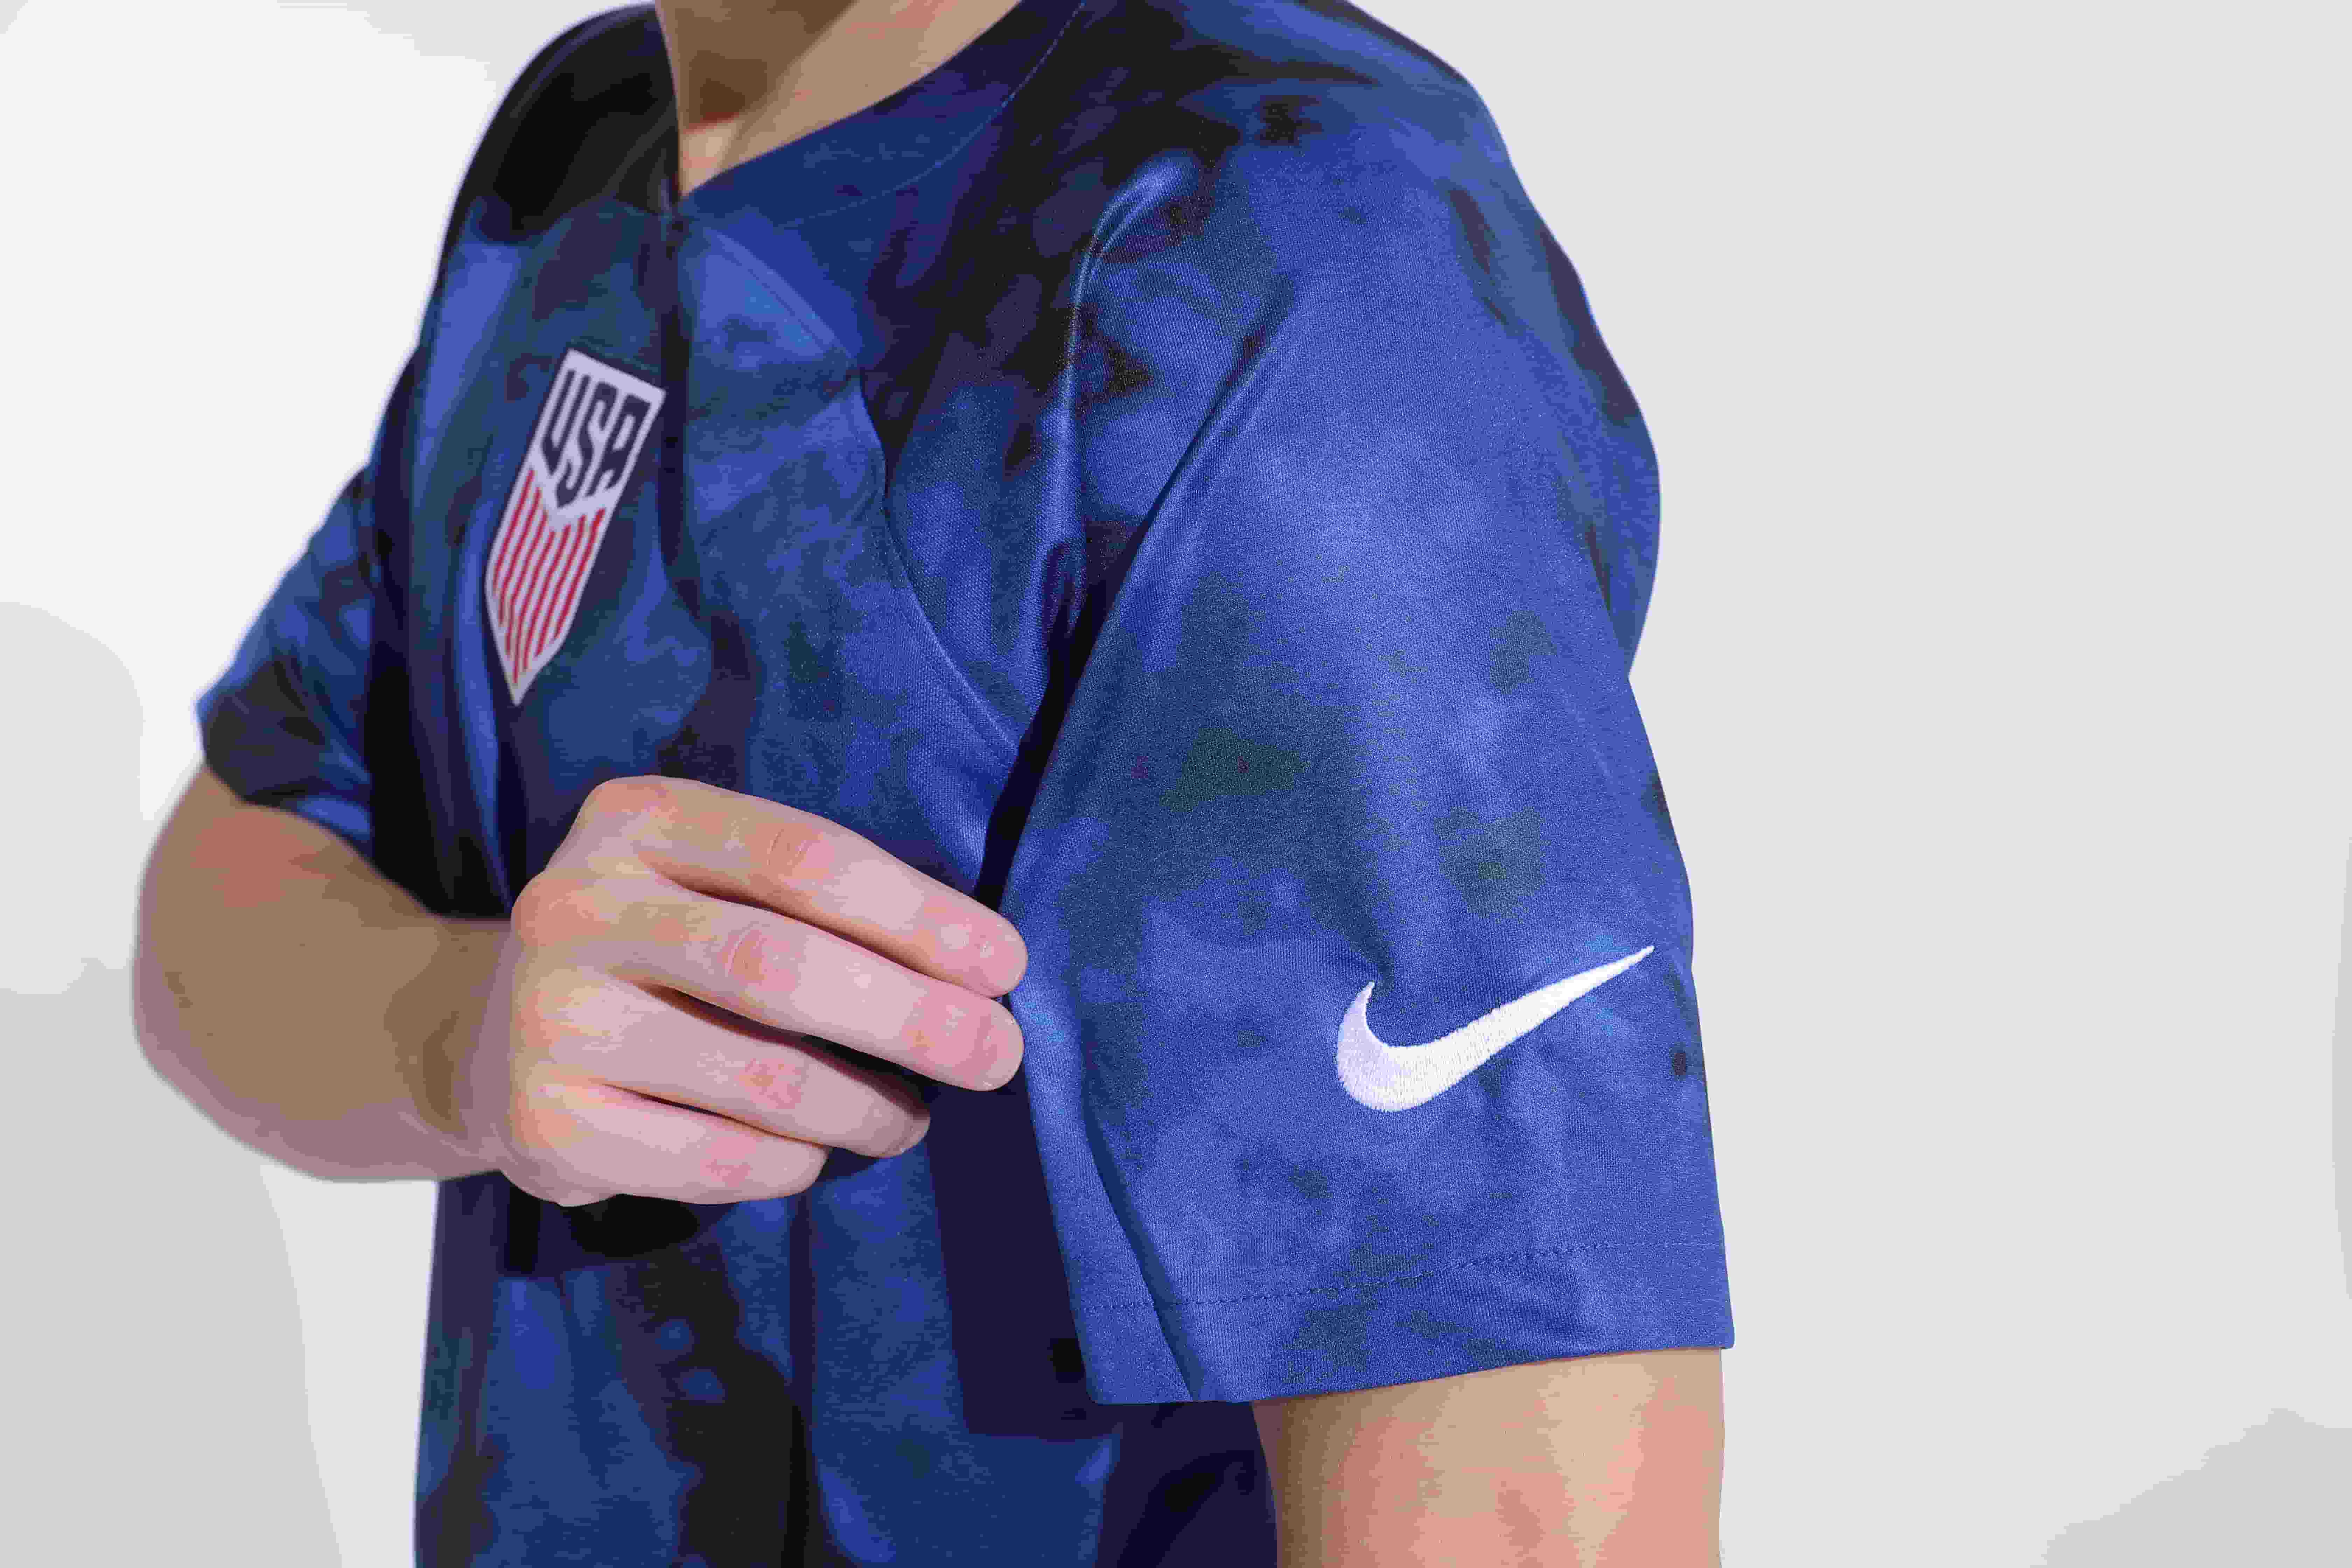 USA World Cup away jersey (2).jpg